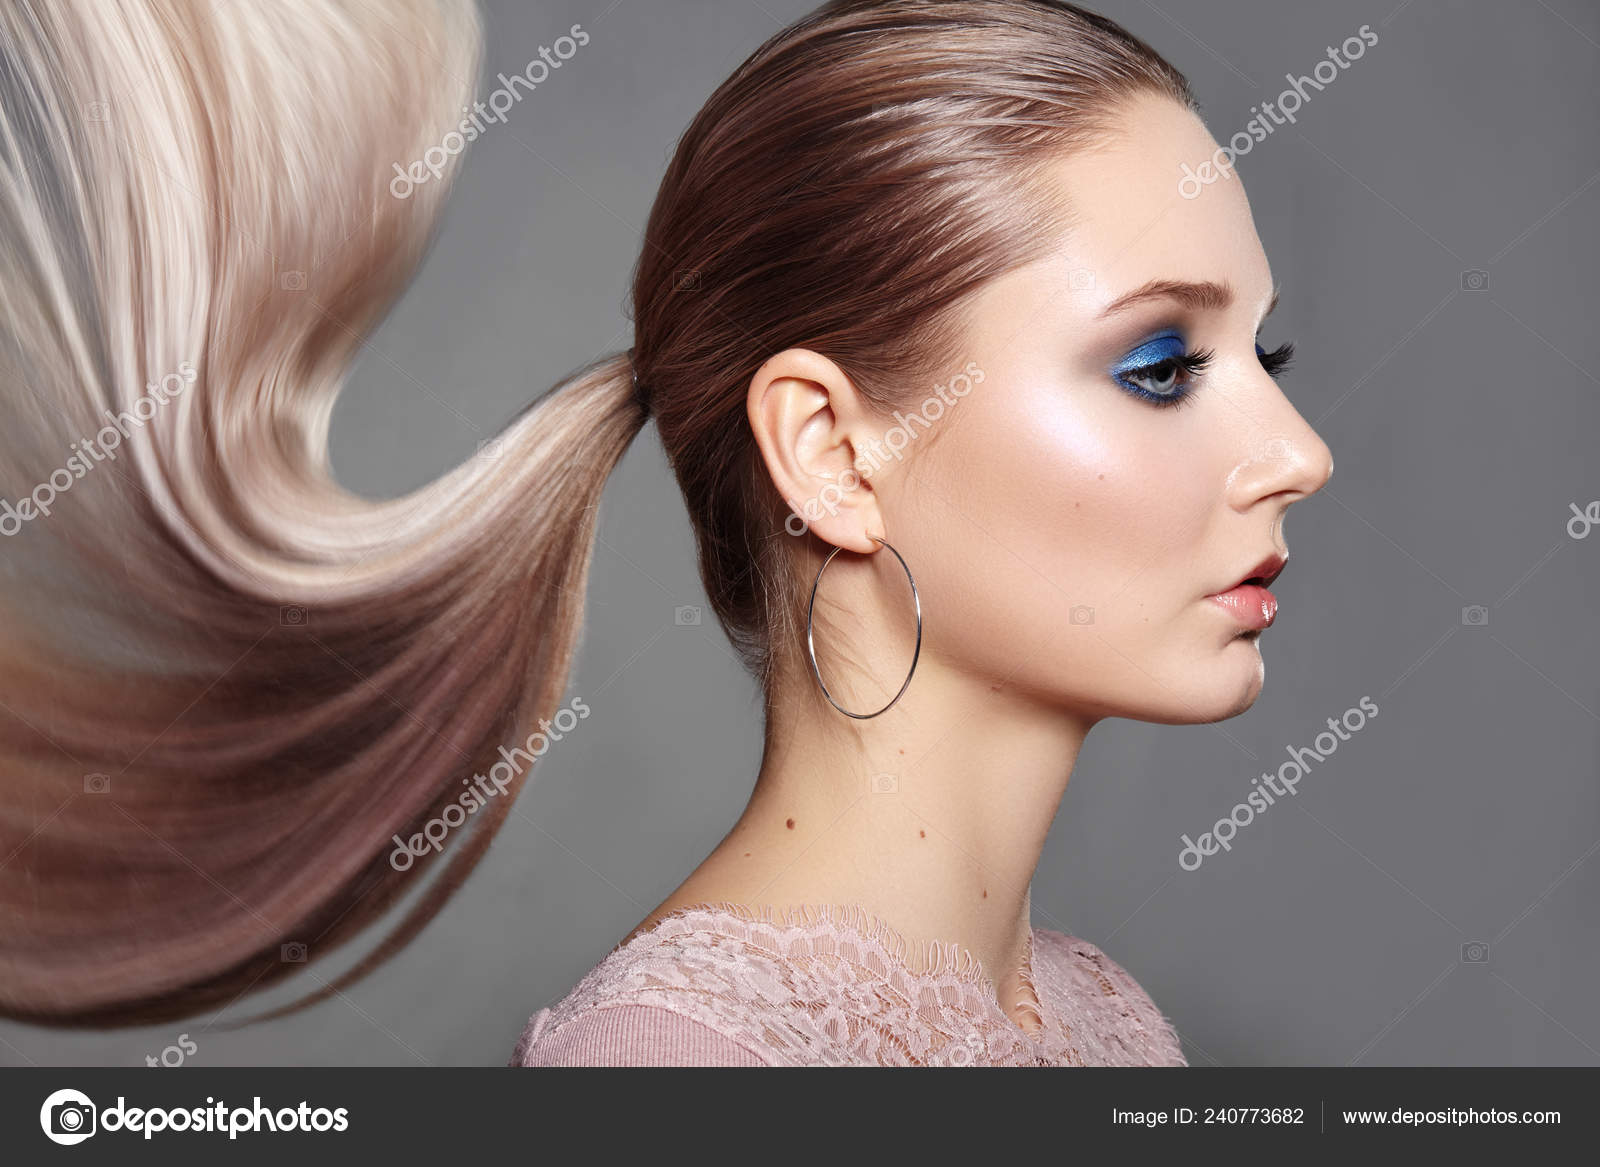 Cabelo loiro comprido lindo penteado mulher moda maquiagem